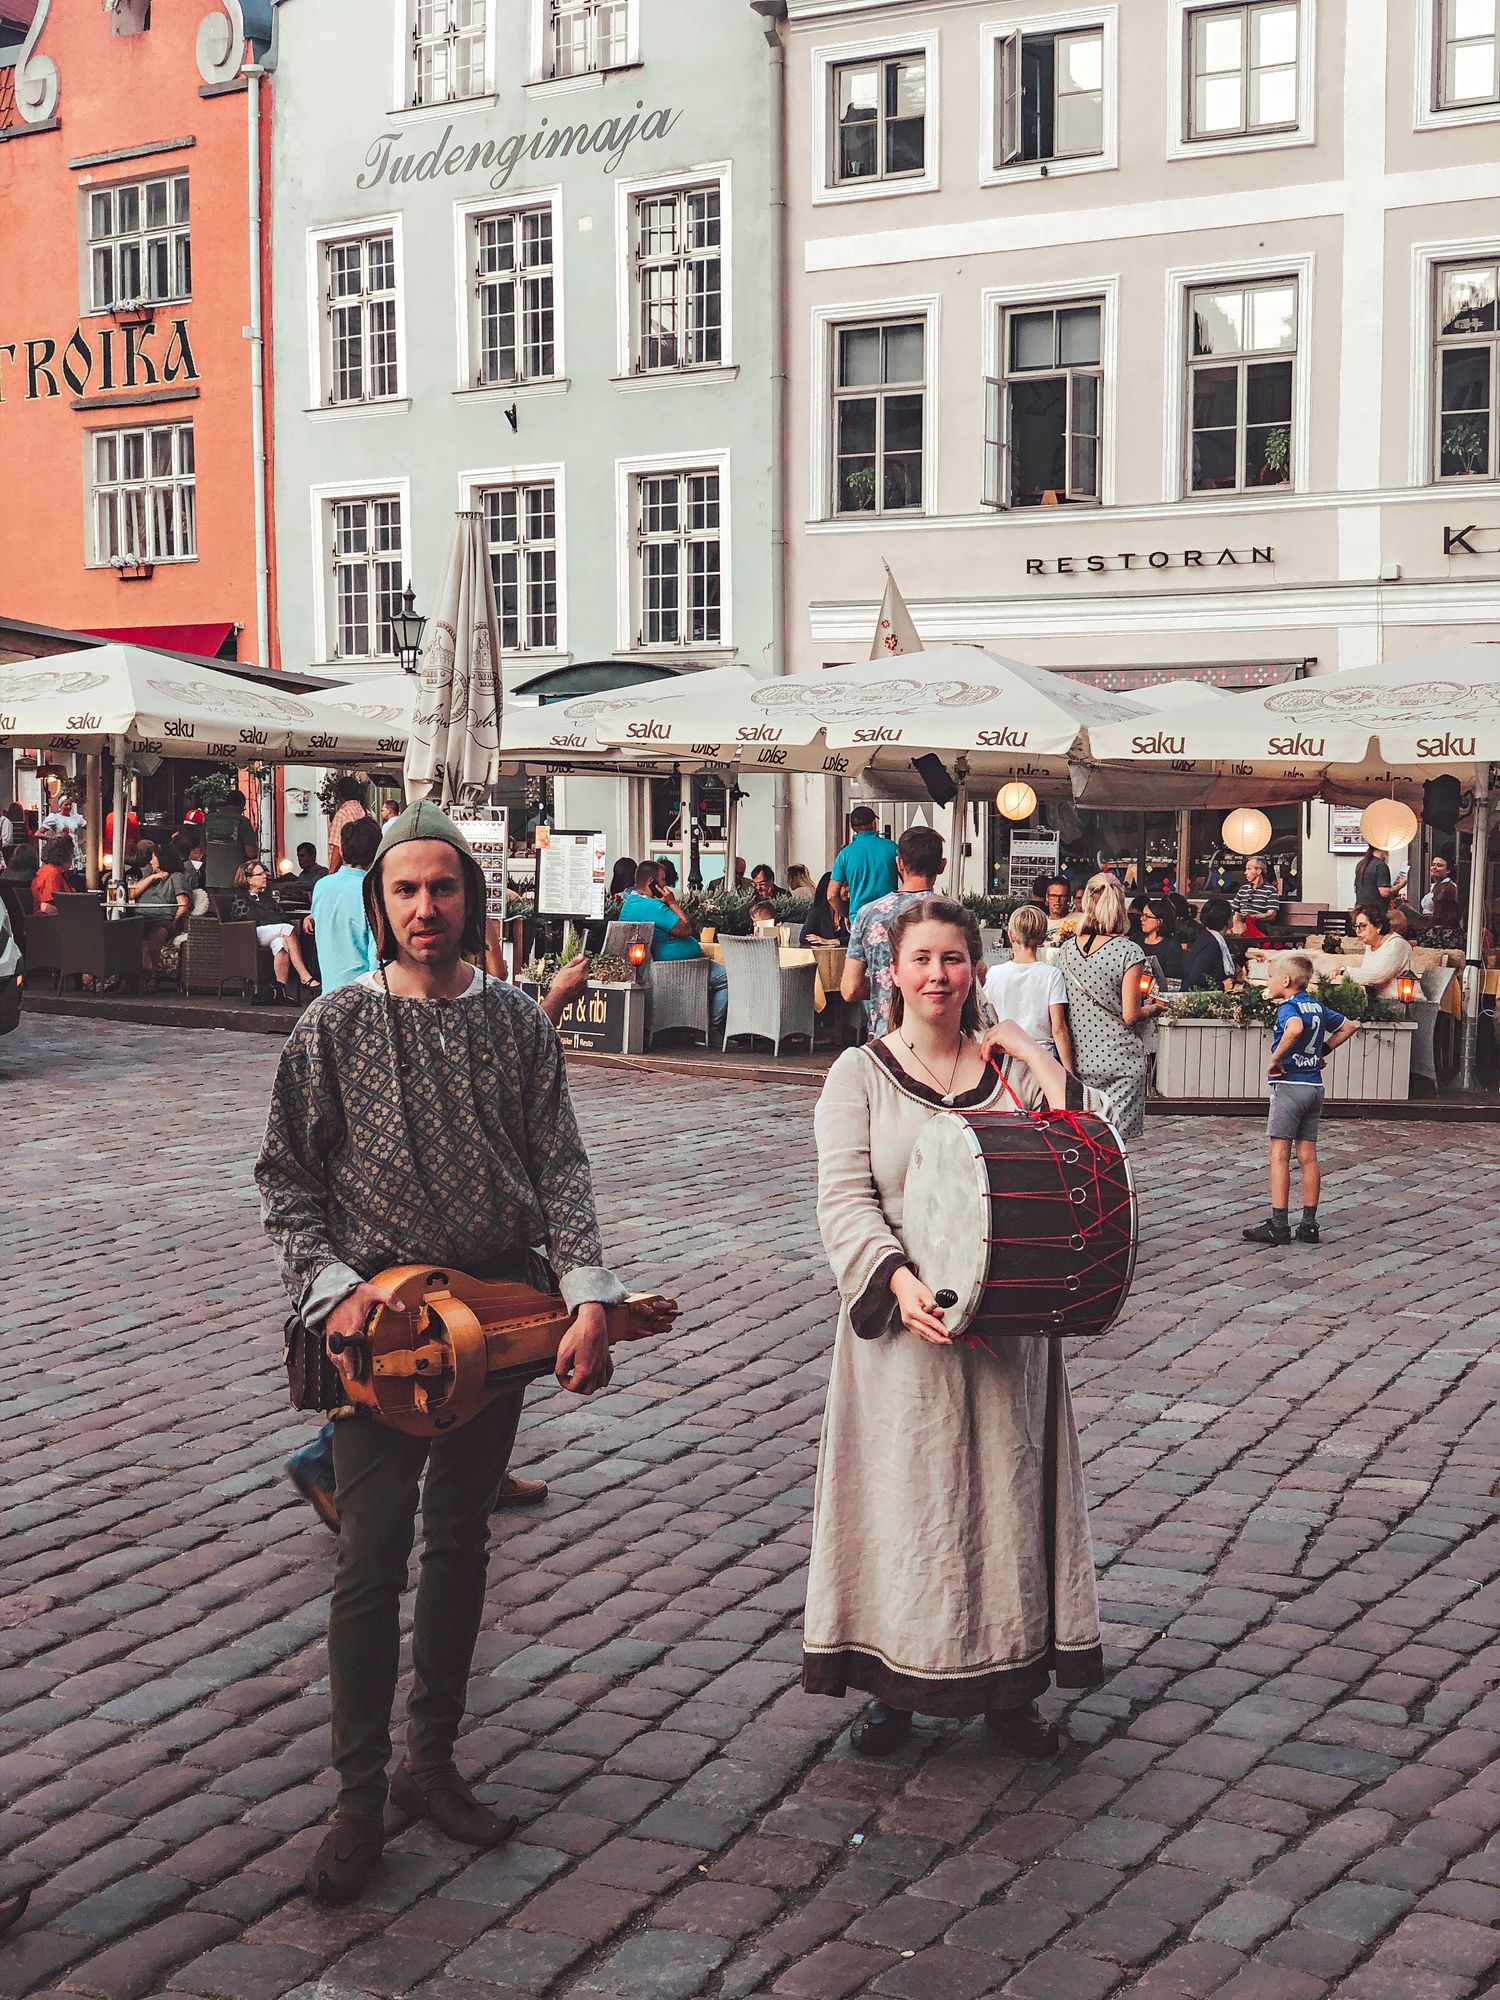 Keskiaika­tunnelmaan pääsee myös esiintyvien taiteilijoiden avulla. © Visit Estonia